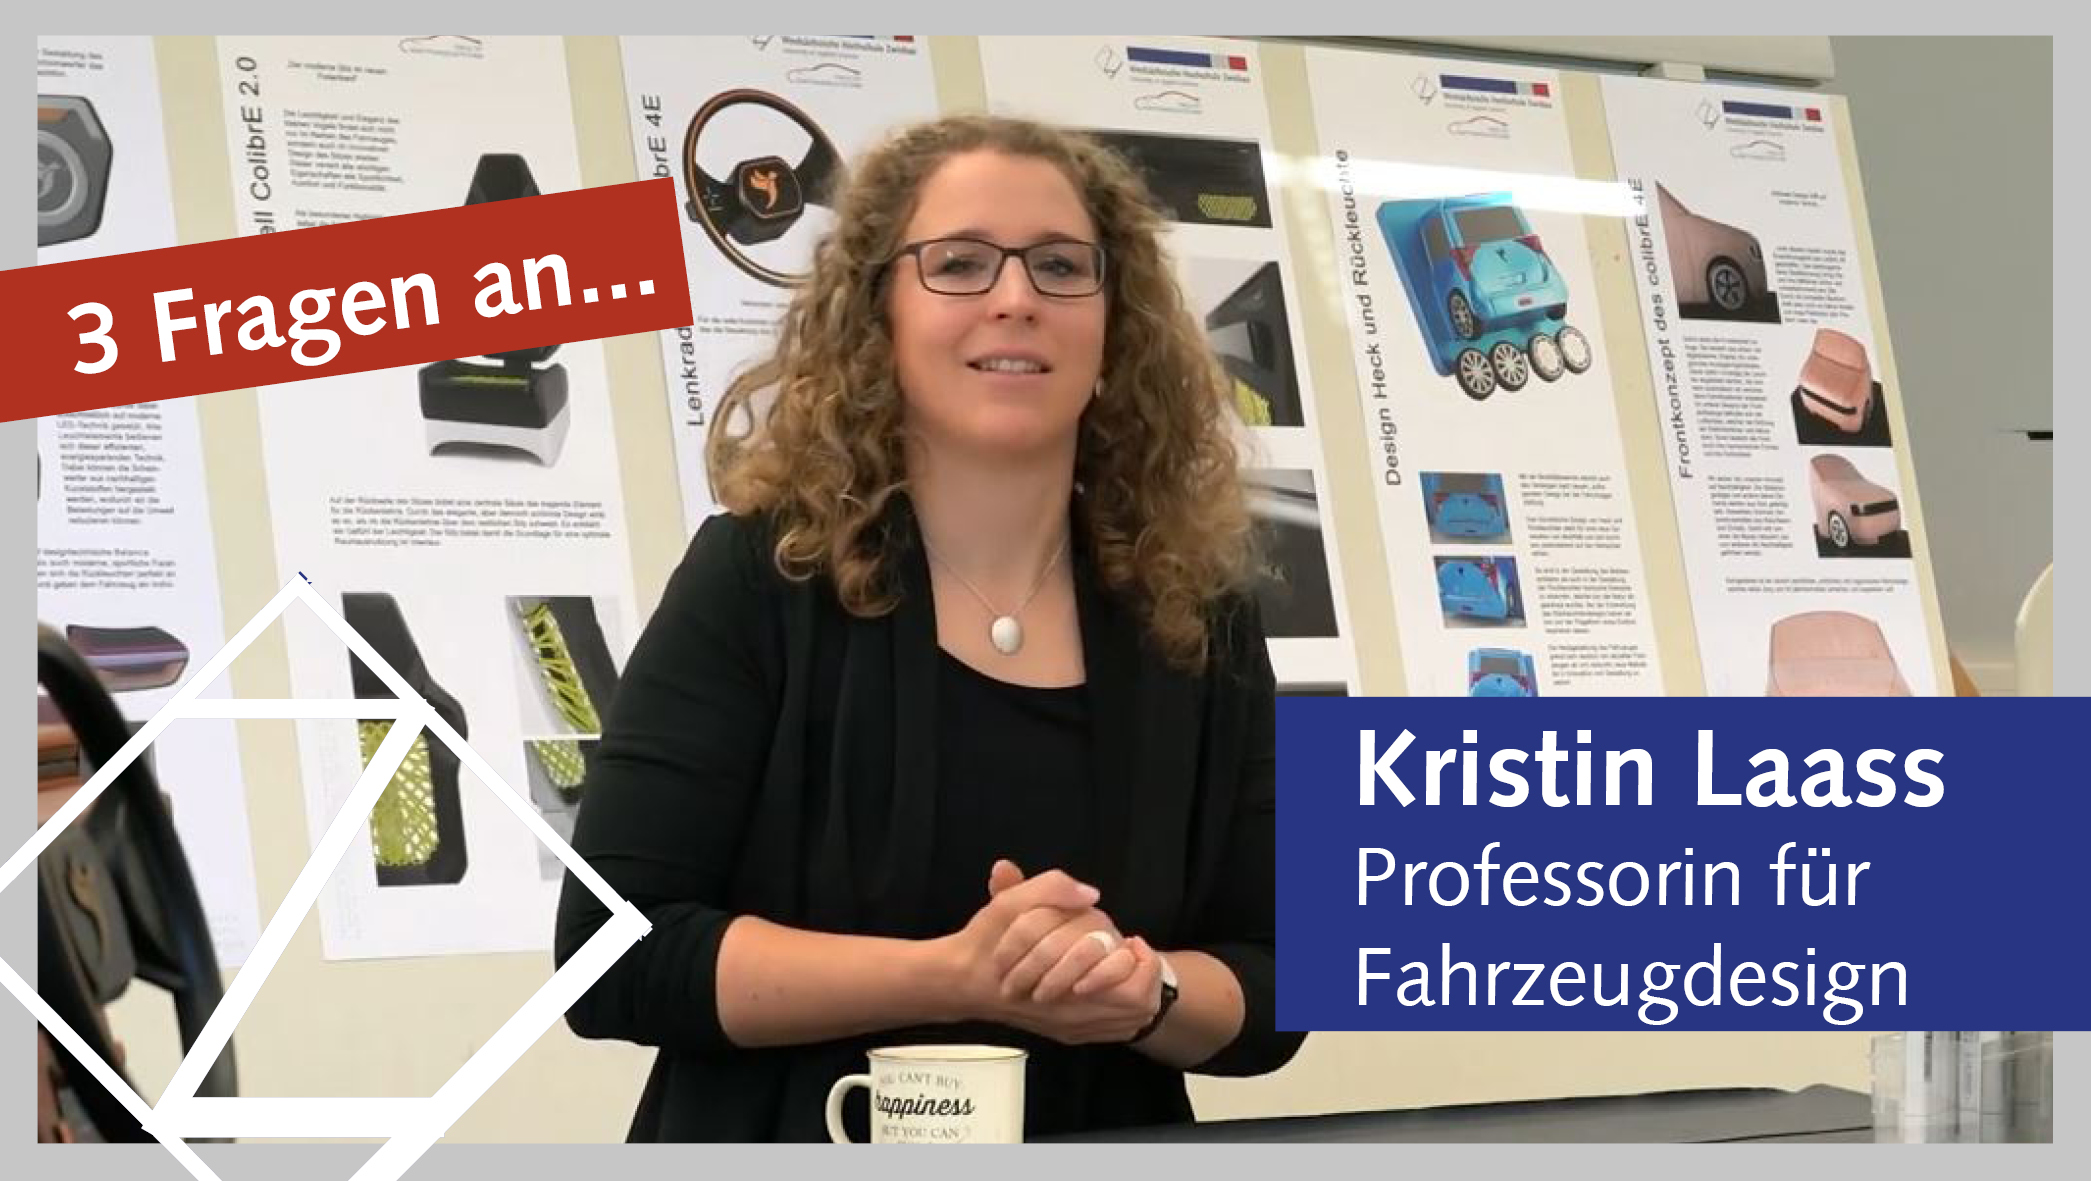 Professorin Kristin Laass vor Plakaten mit Deisgnentwürfen, schaut in Kamera